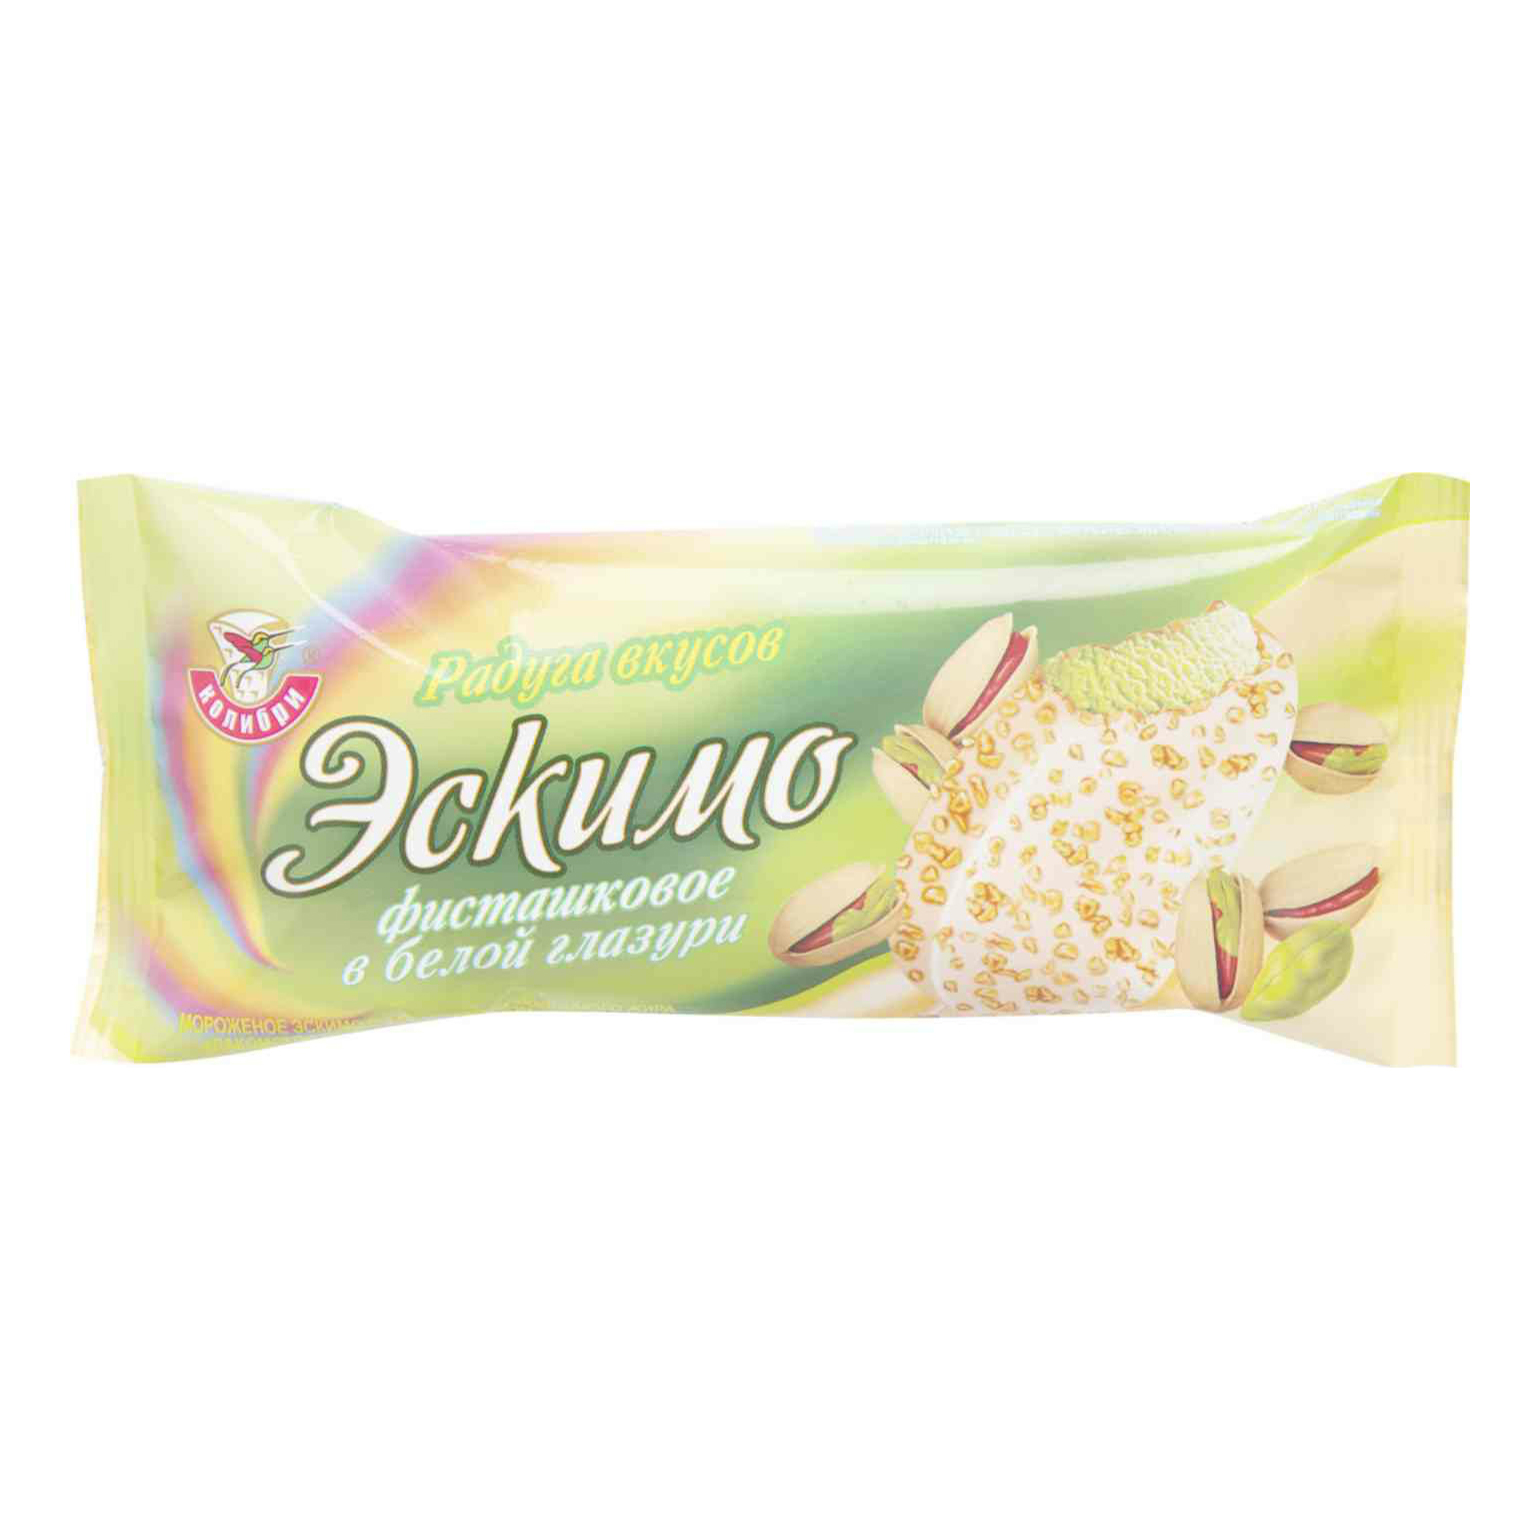 Мороженое эскимо Колибри Радуга вкусов фисташковое в белой глазури 12% 70 г